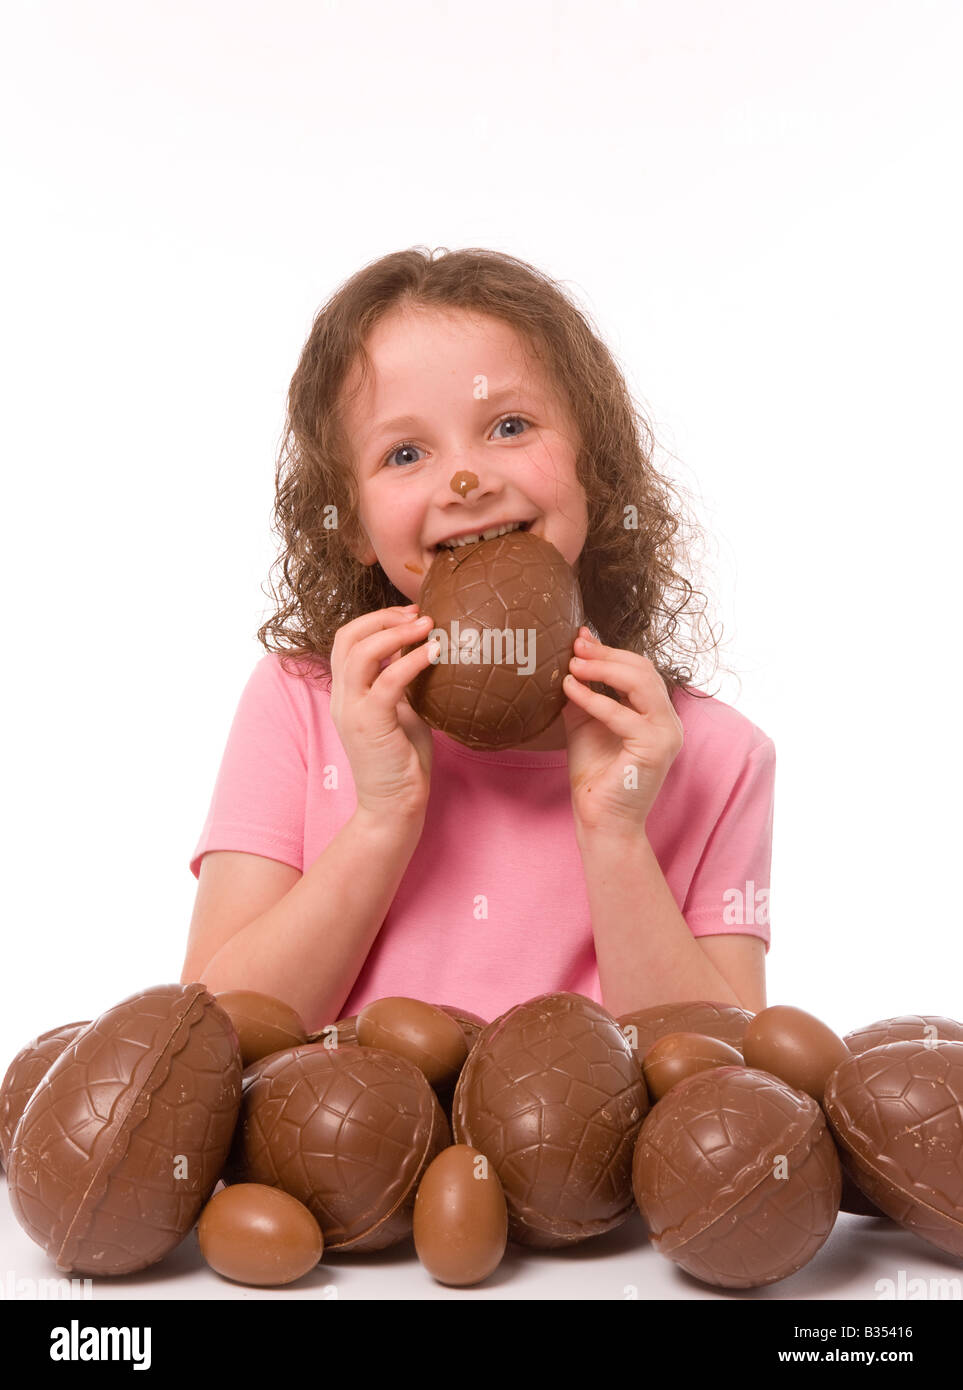 Jeune enfant portant un t-shirt rose avec du chocolat sur le visage, avec une grosse pile d'oeufs de Pâques, en mangeant un d'eux. Banque D'Images